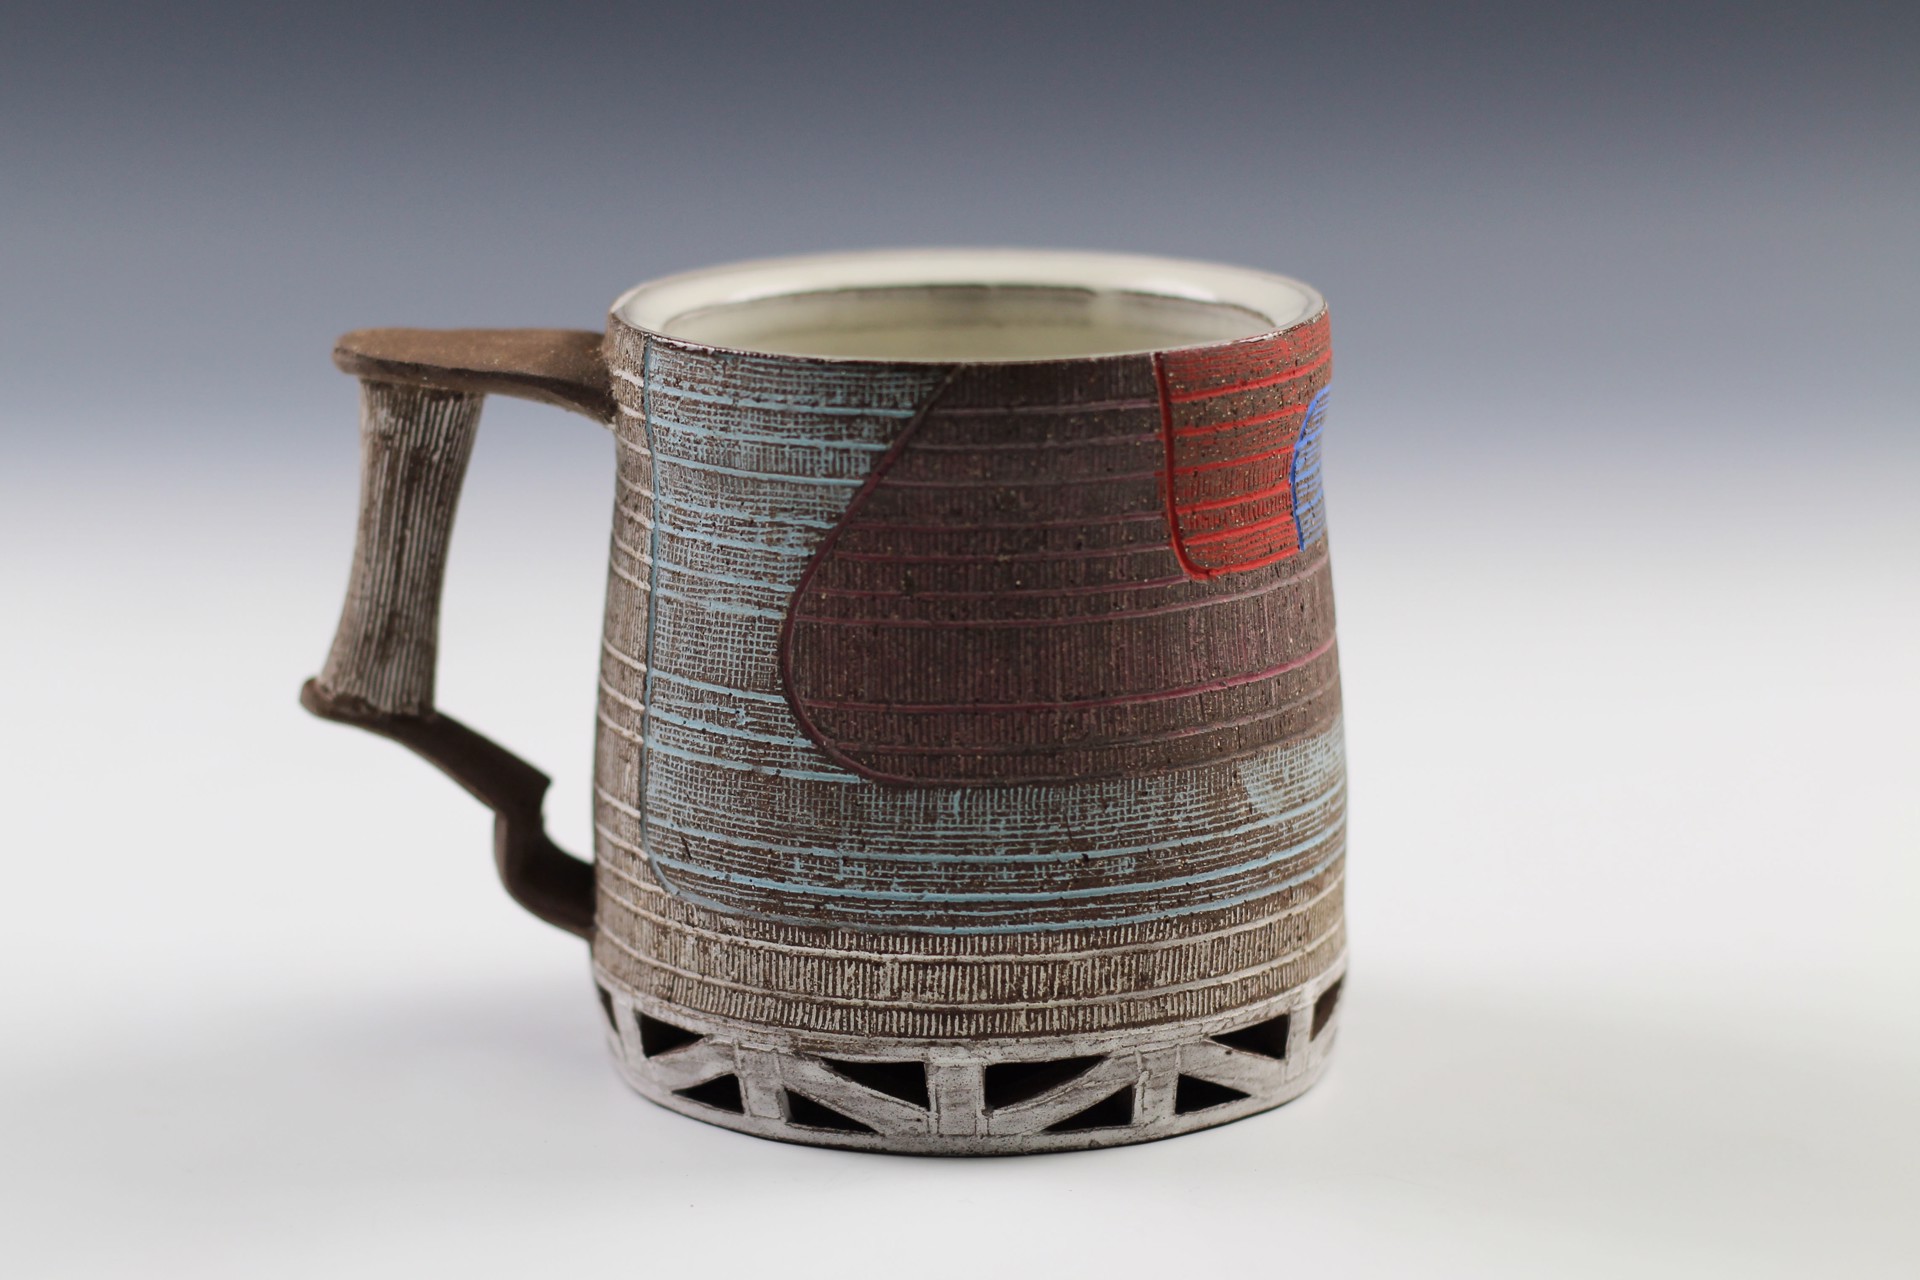 Mug by Matt Repsher